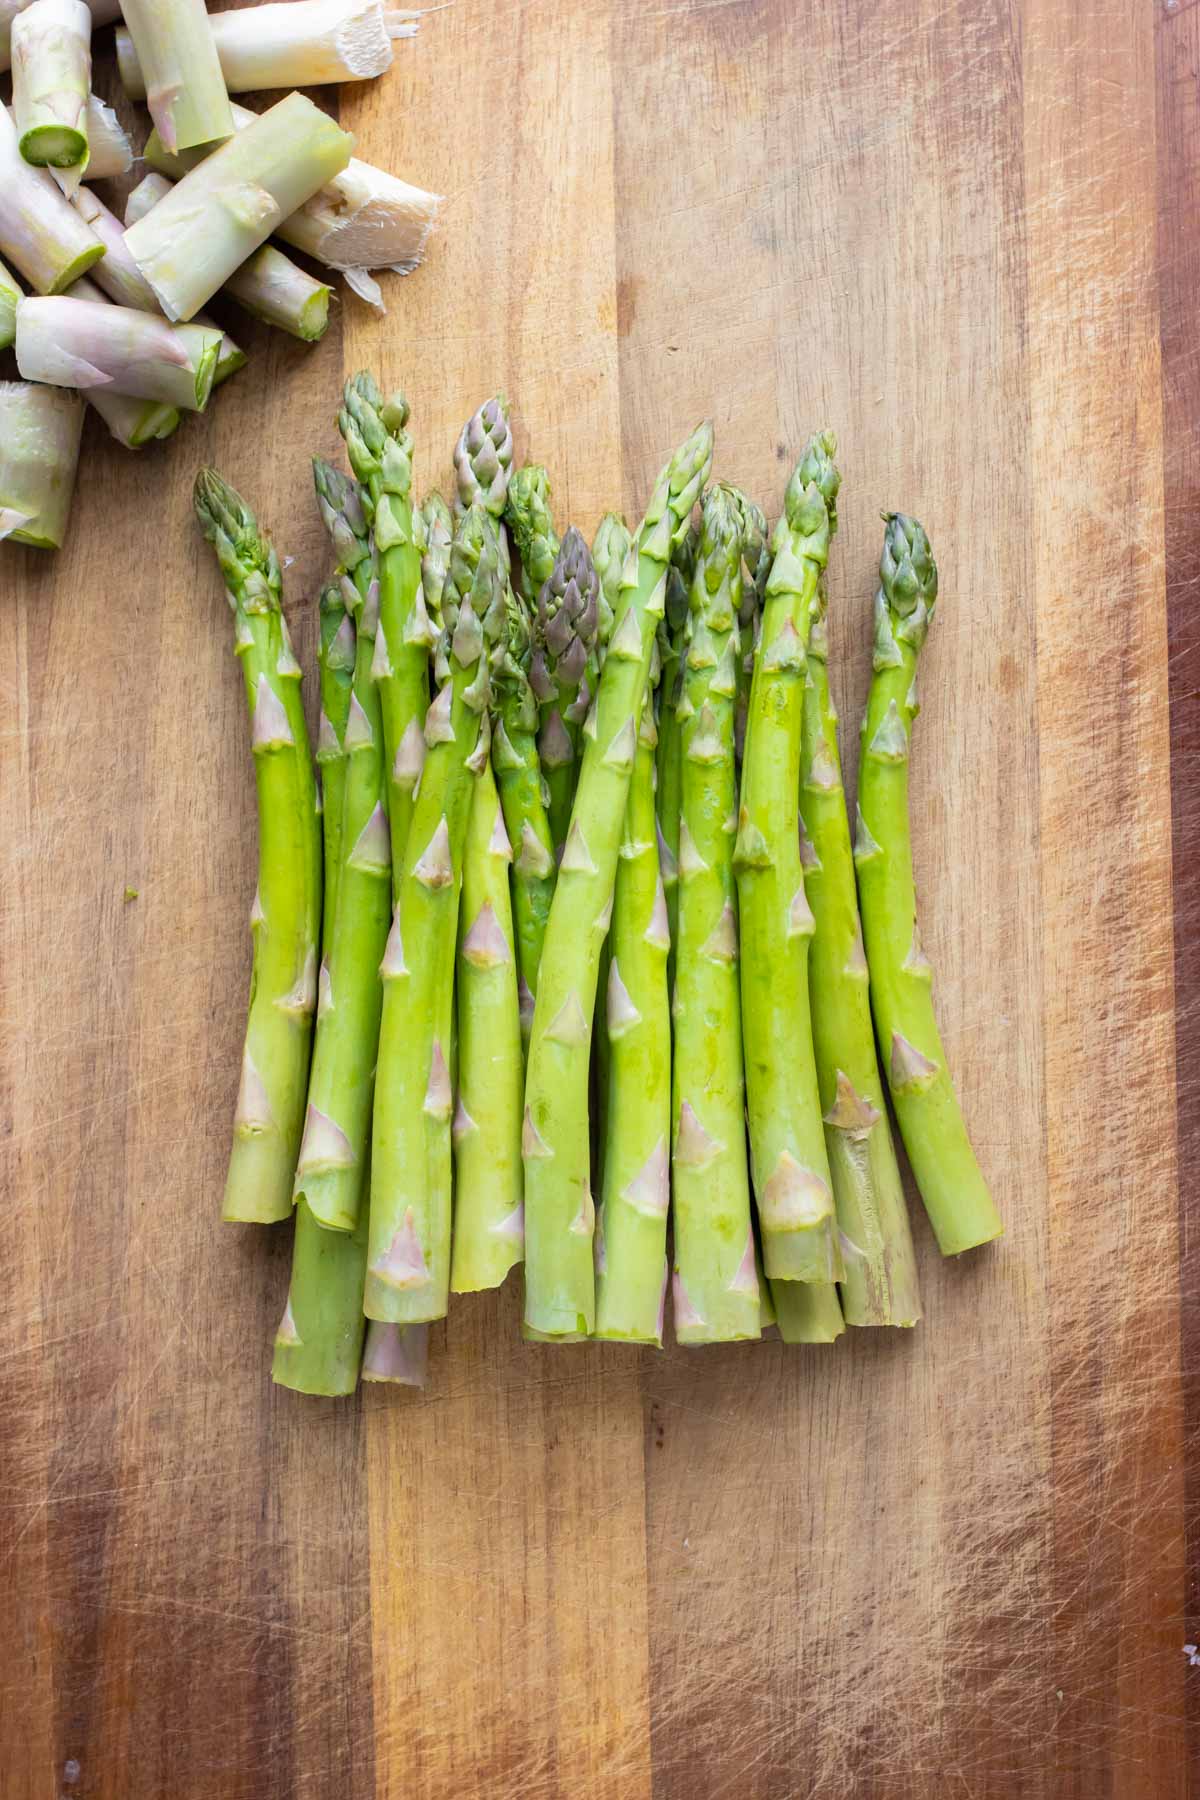 Raw asparagus is set on a cutting board.